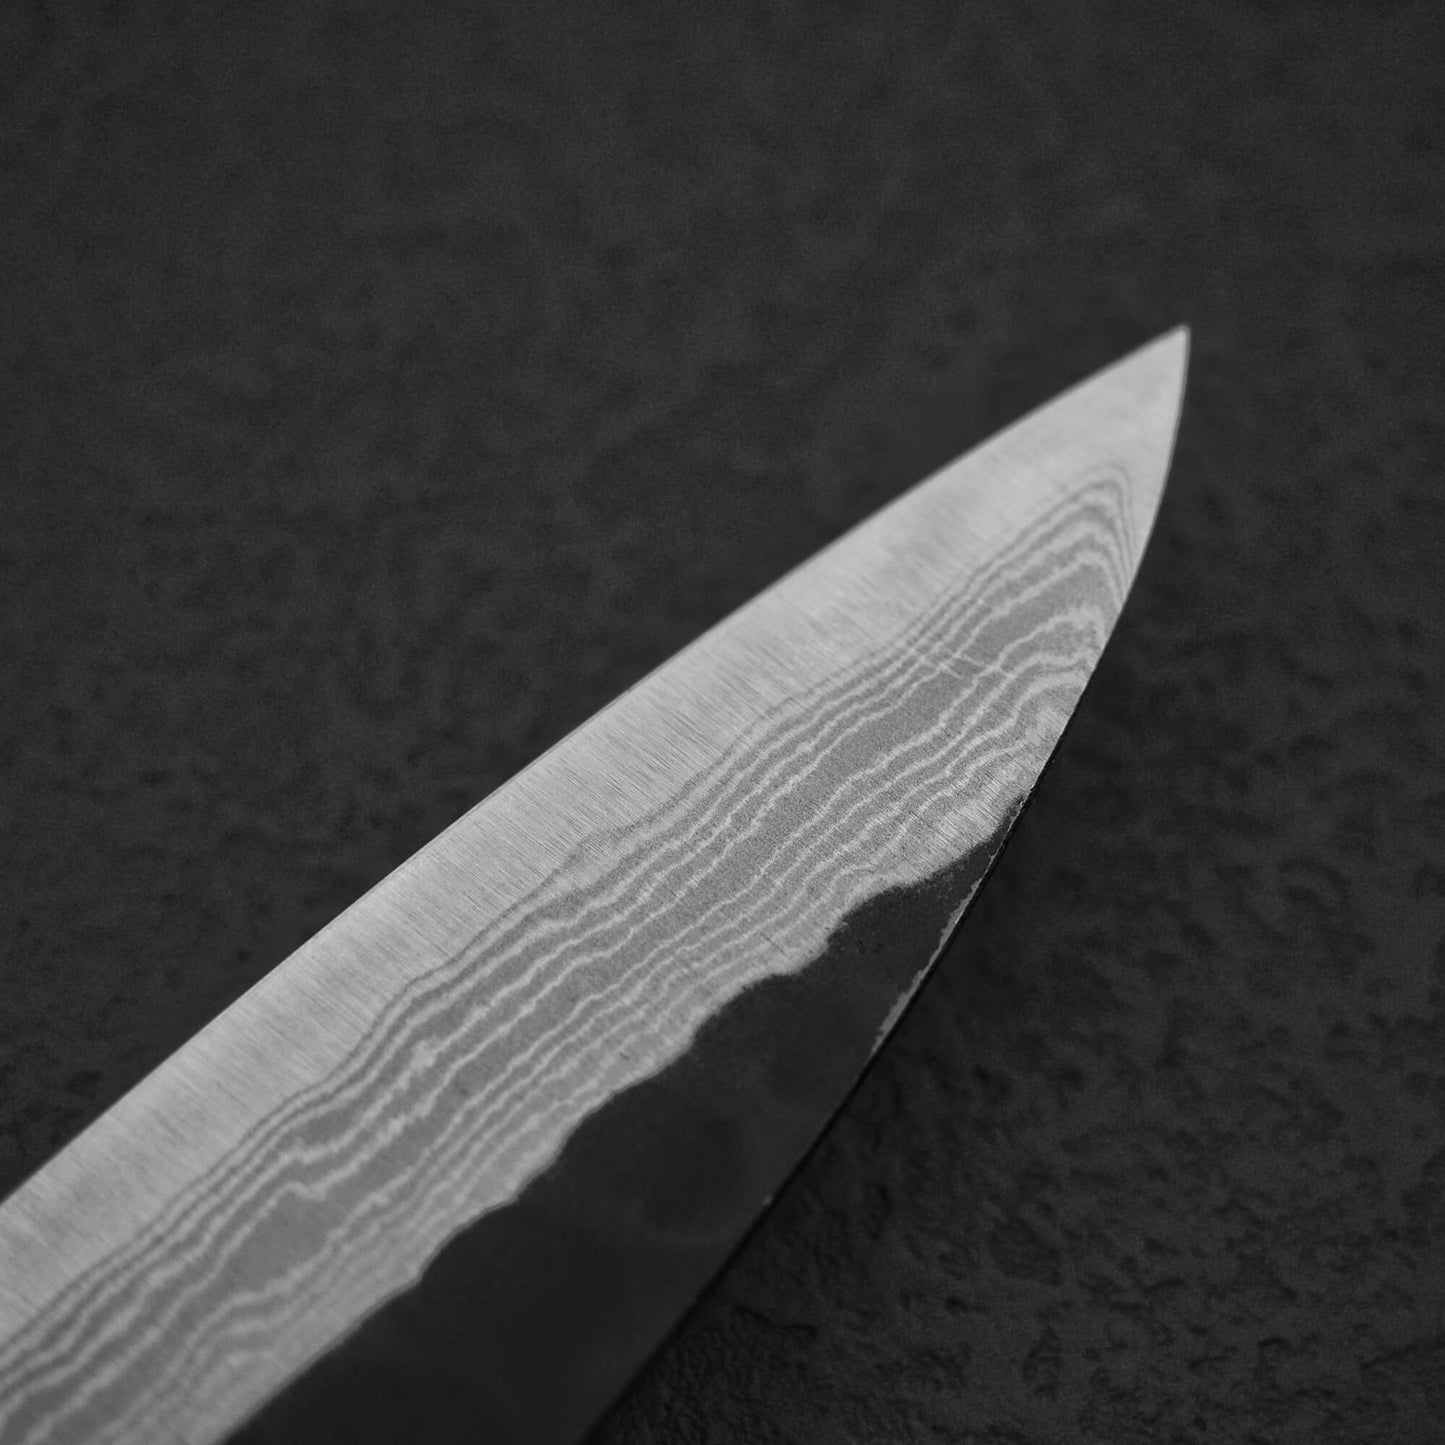 Akifusa tsuchime kurouchi damascus AS petty knife 160mm